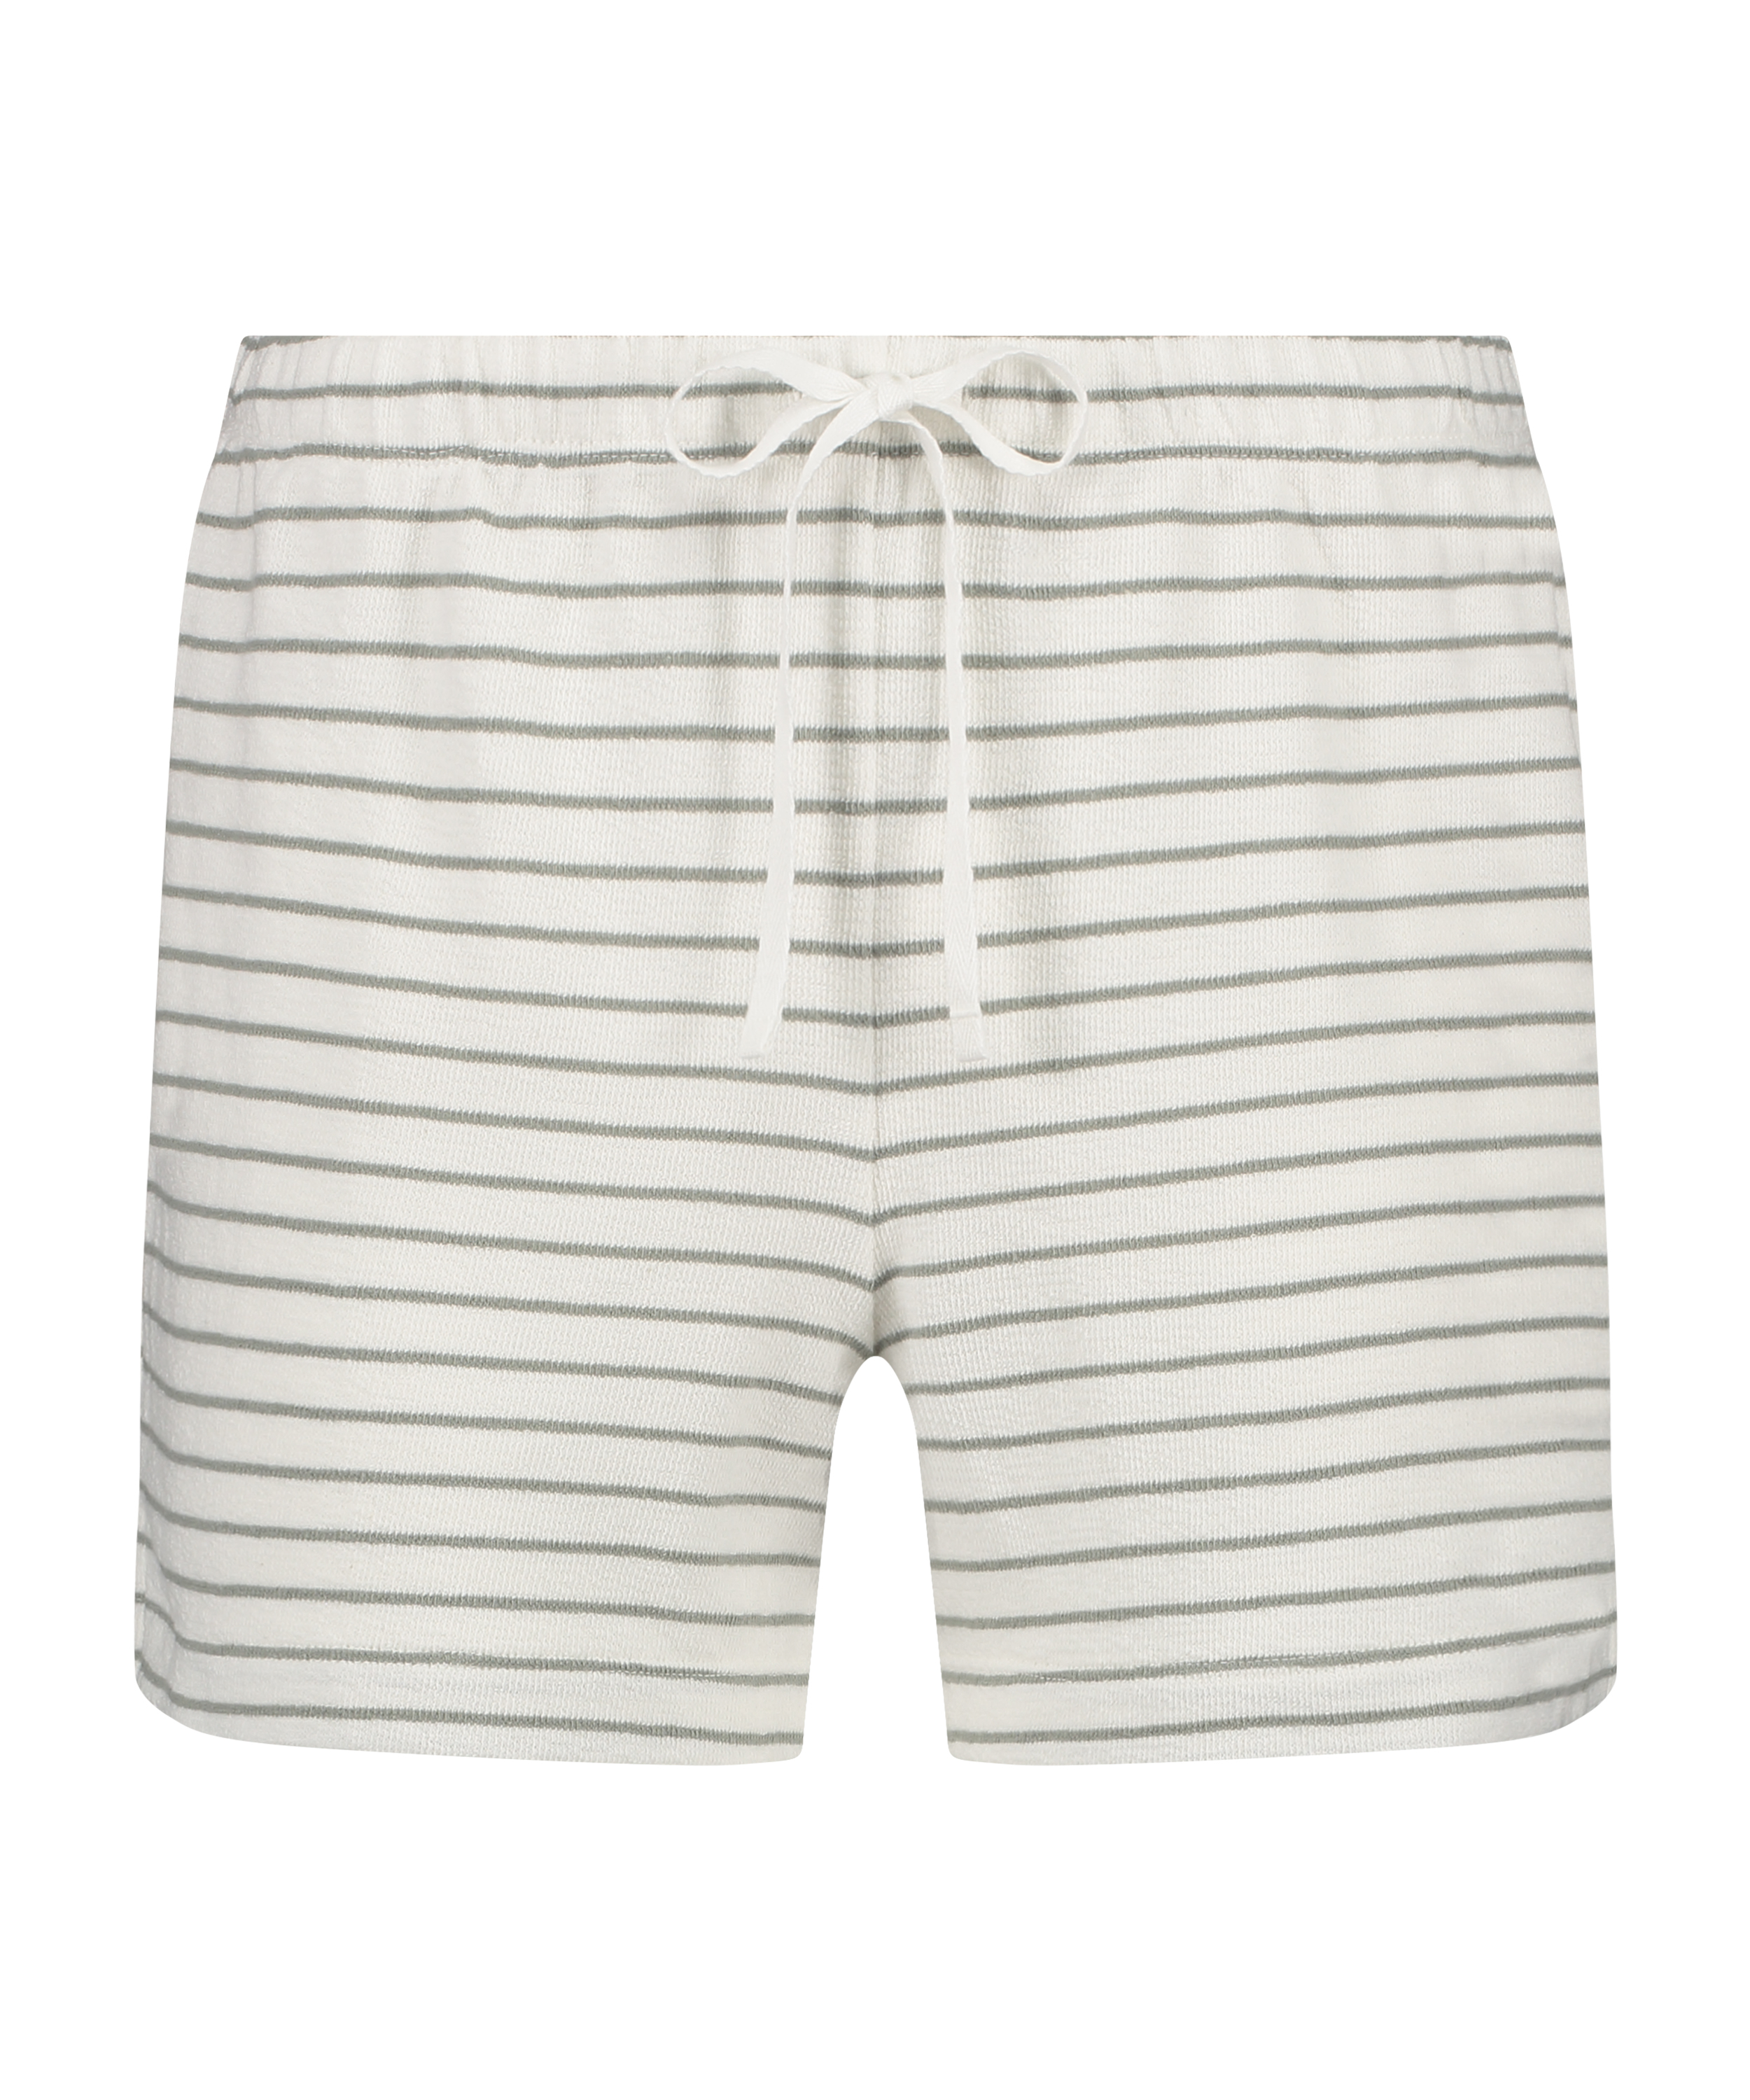 Cotton shorts, White, main